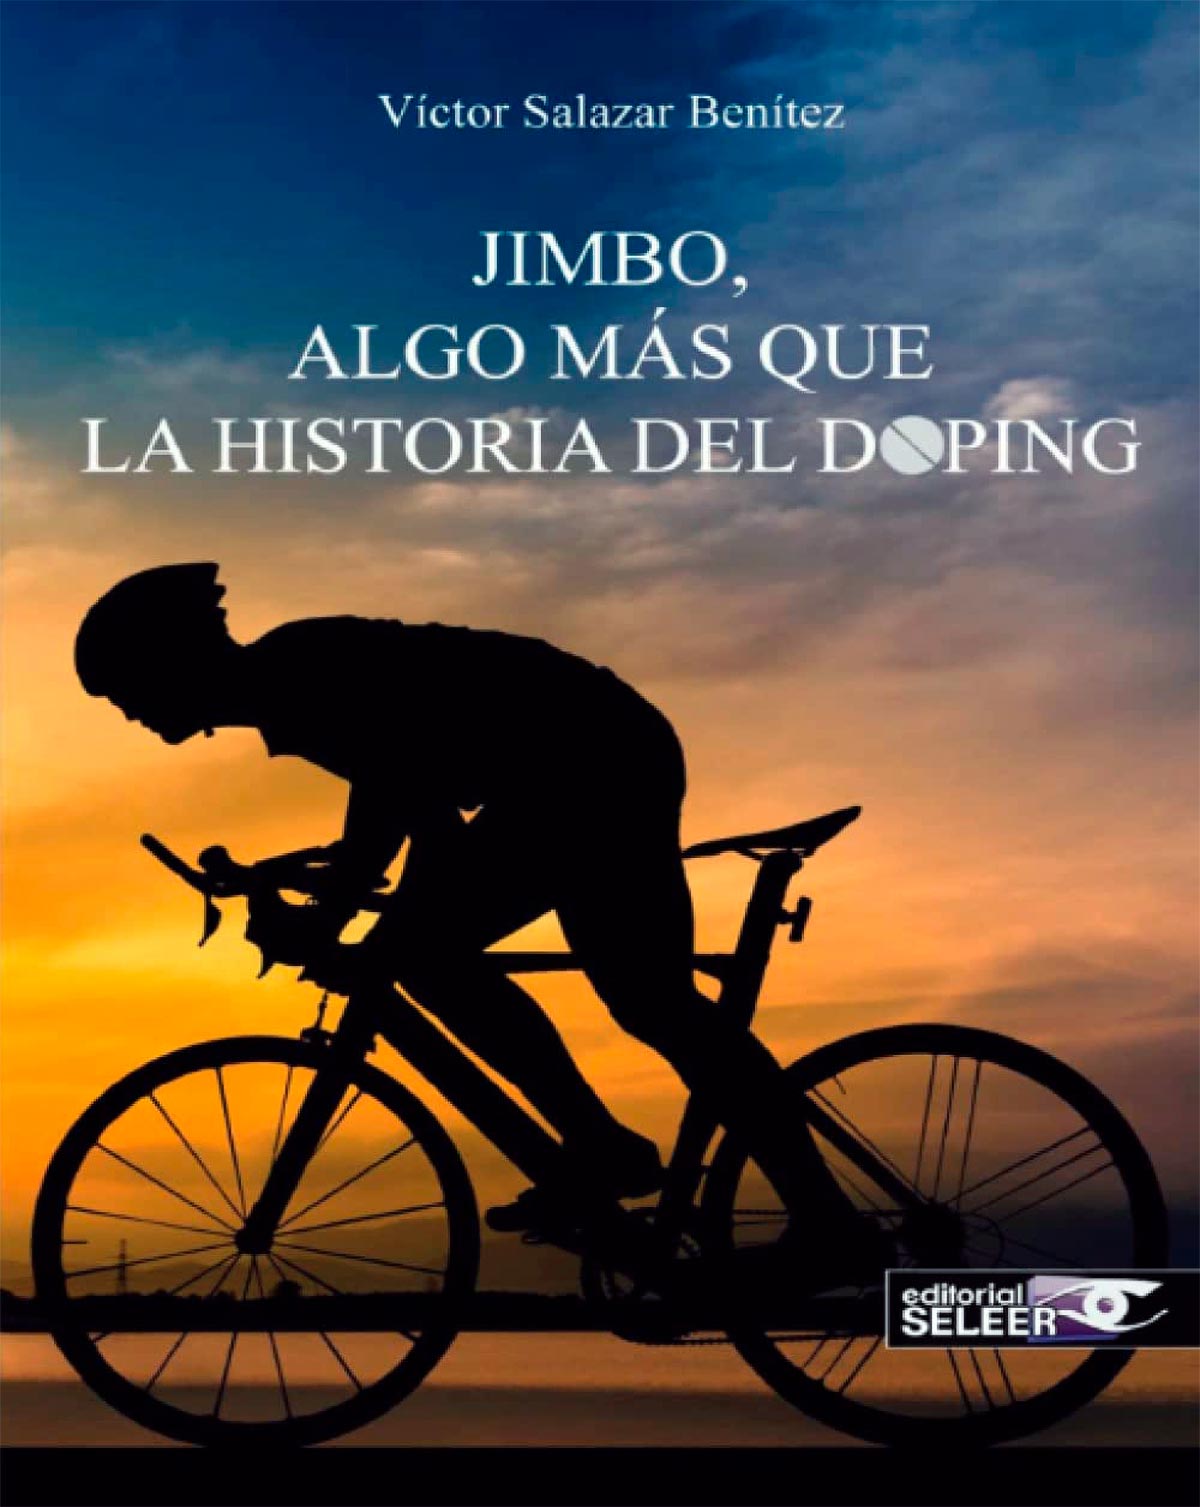 Jimbo, algo más que la historia del doping: un libro autobiográfico que habla sobre el dopaje que ha existido, existe y posiblemente existirá